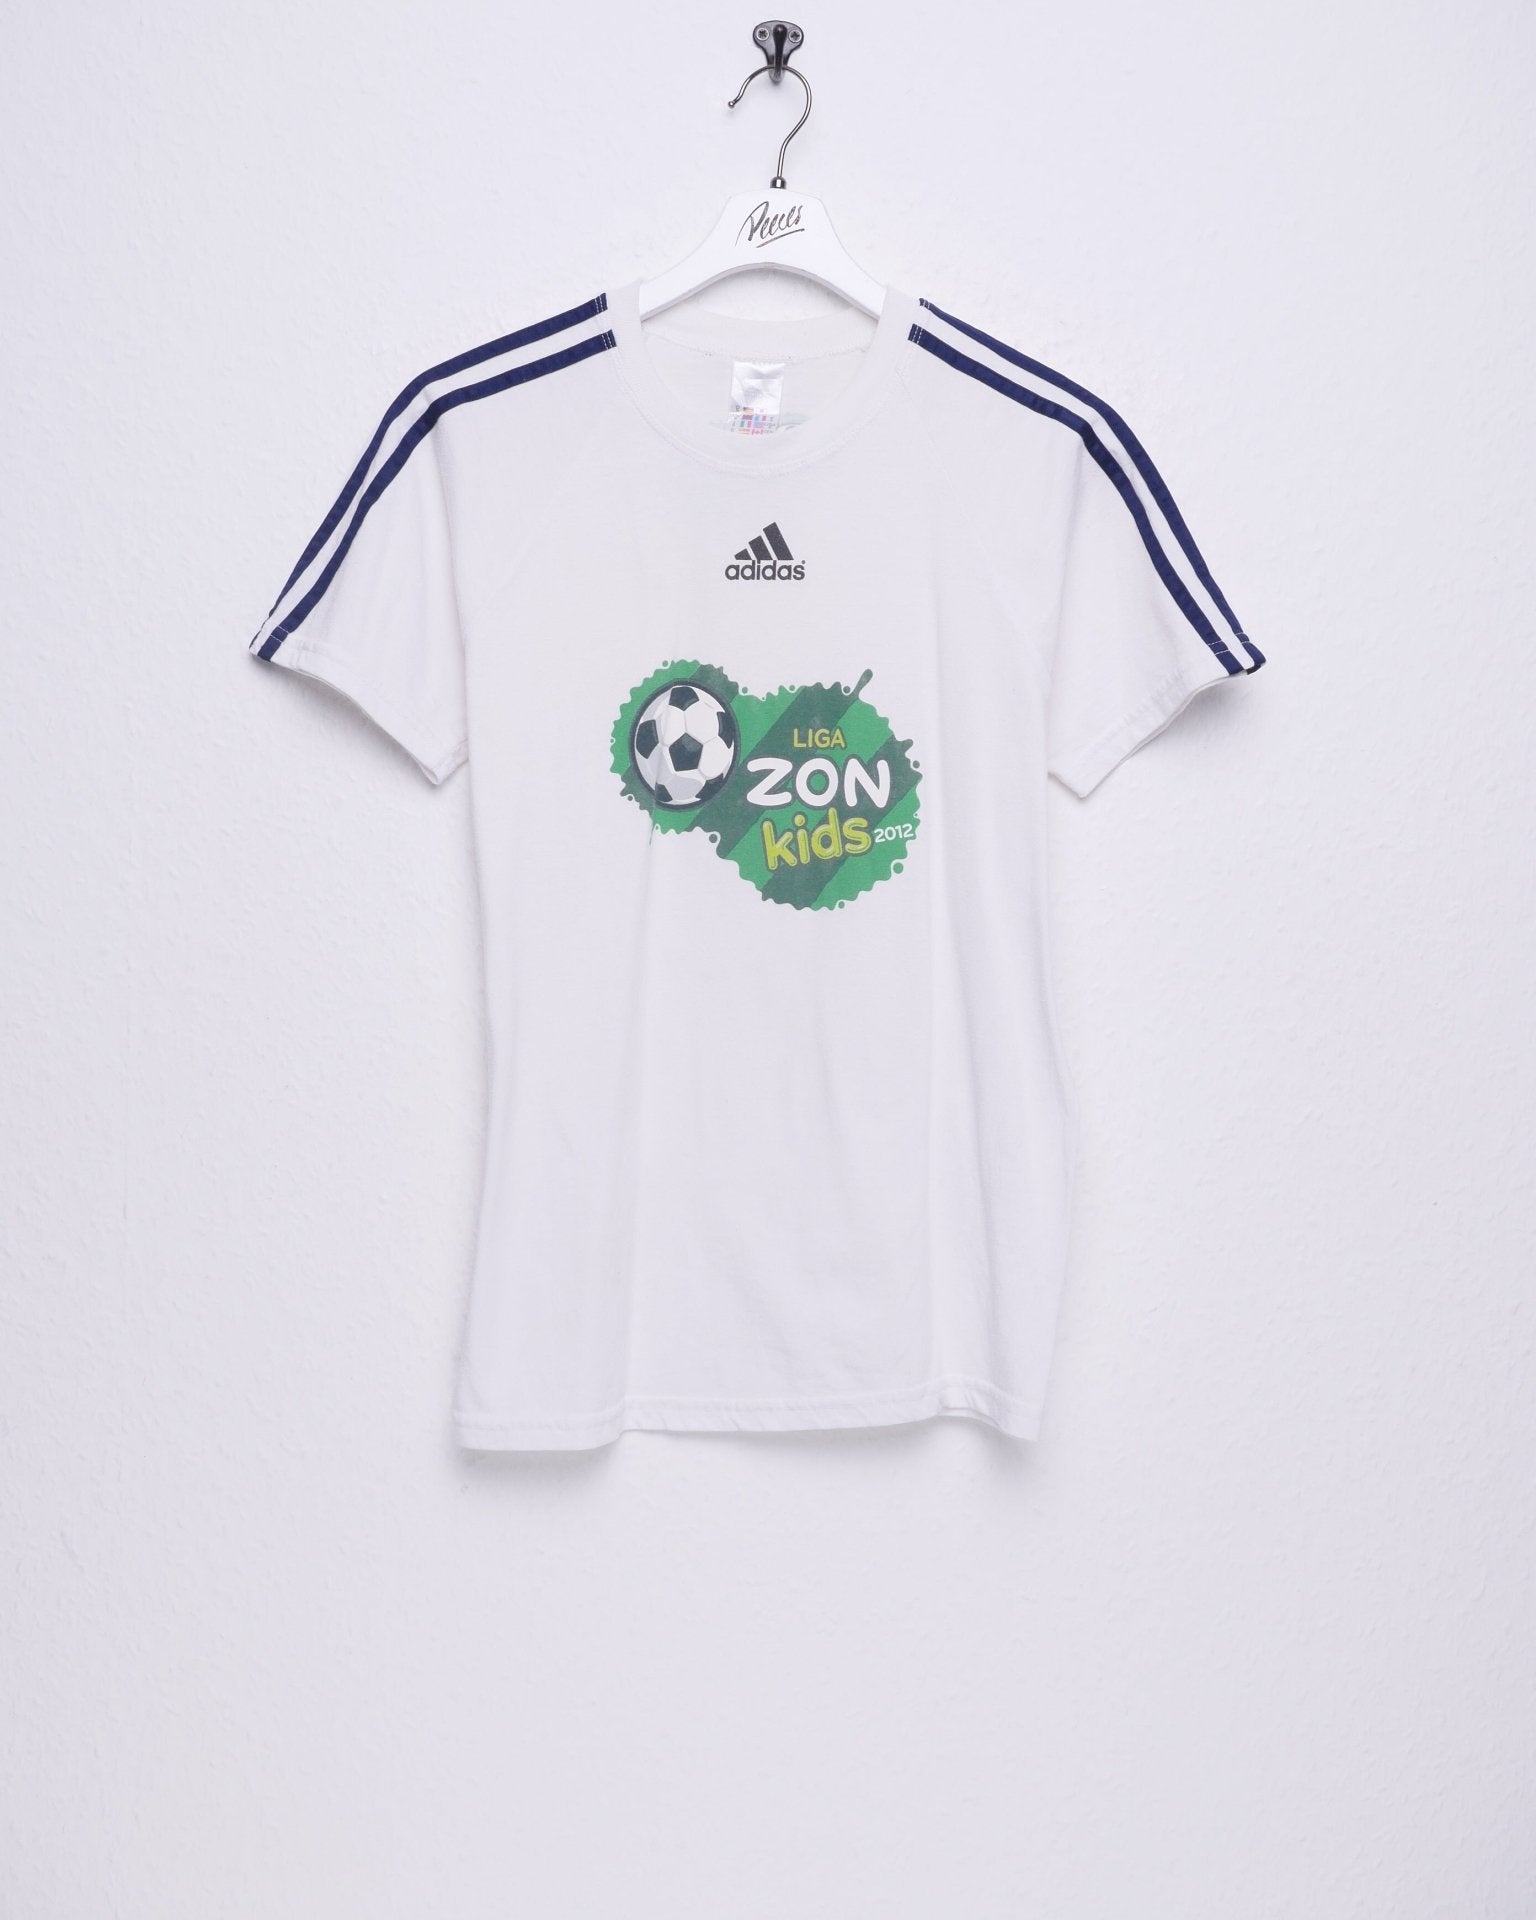 adidas Liga Zon Kids 2012 printed Logo white Shirt - Peeces